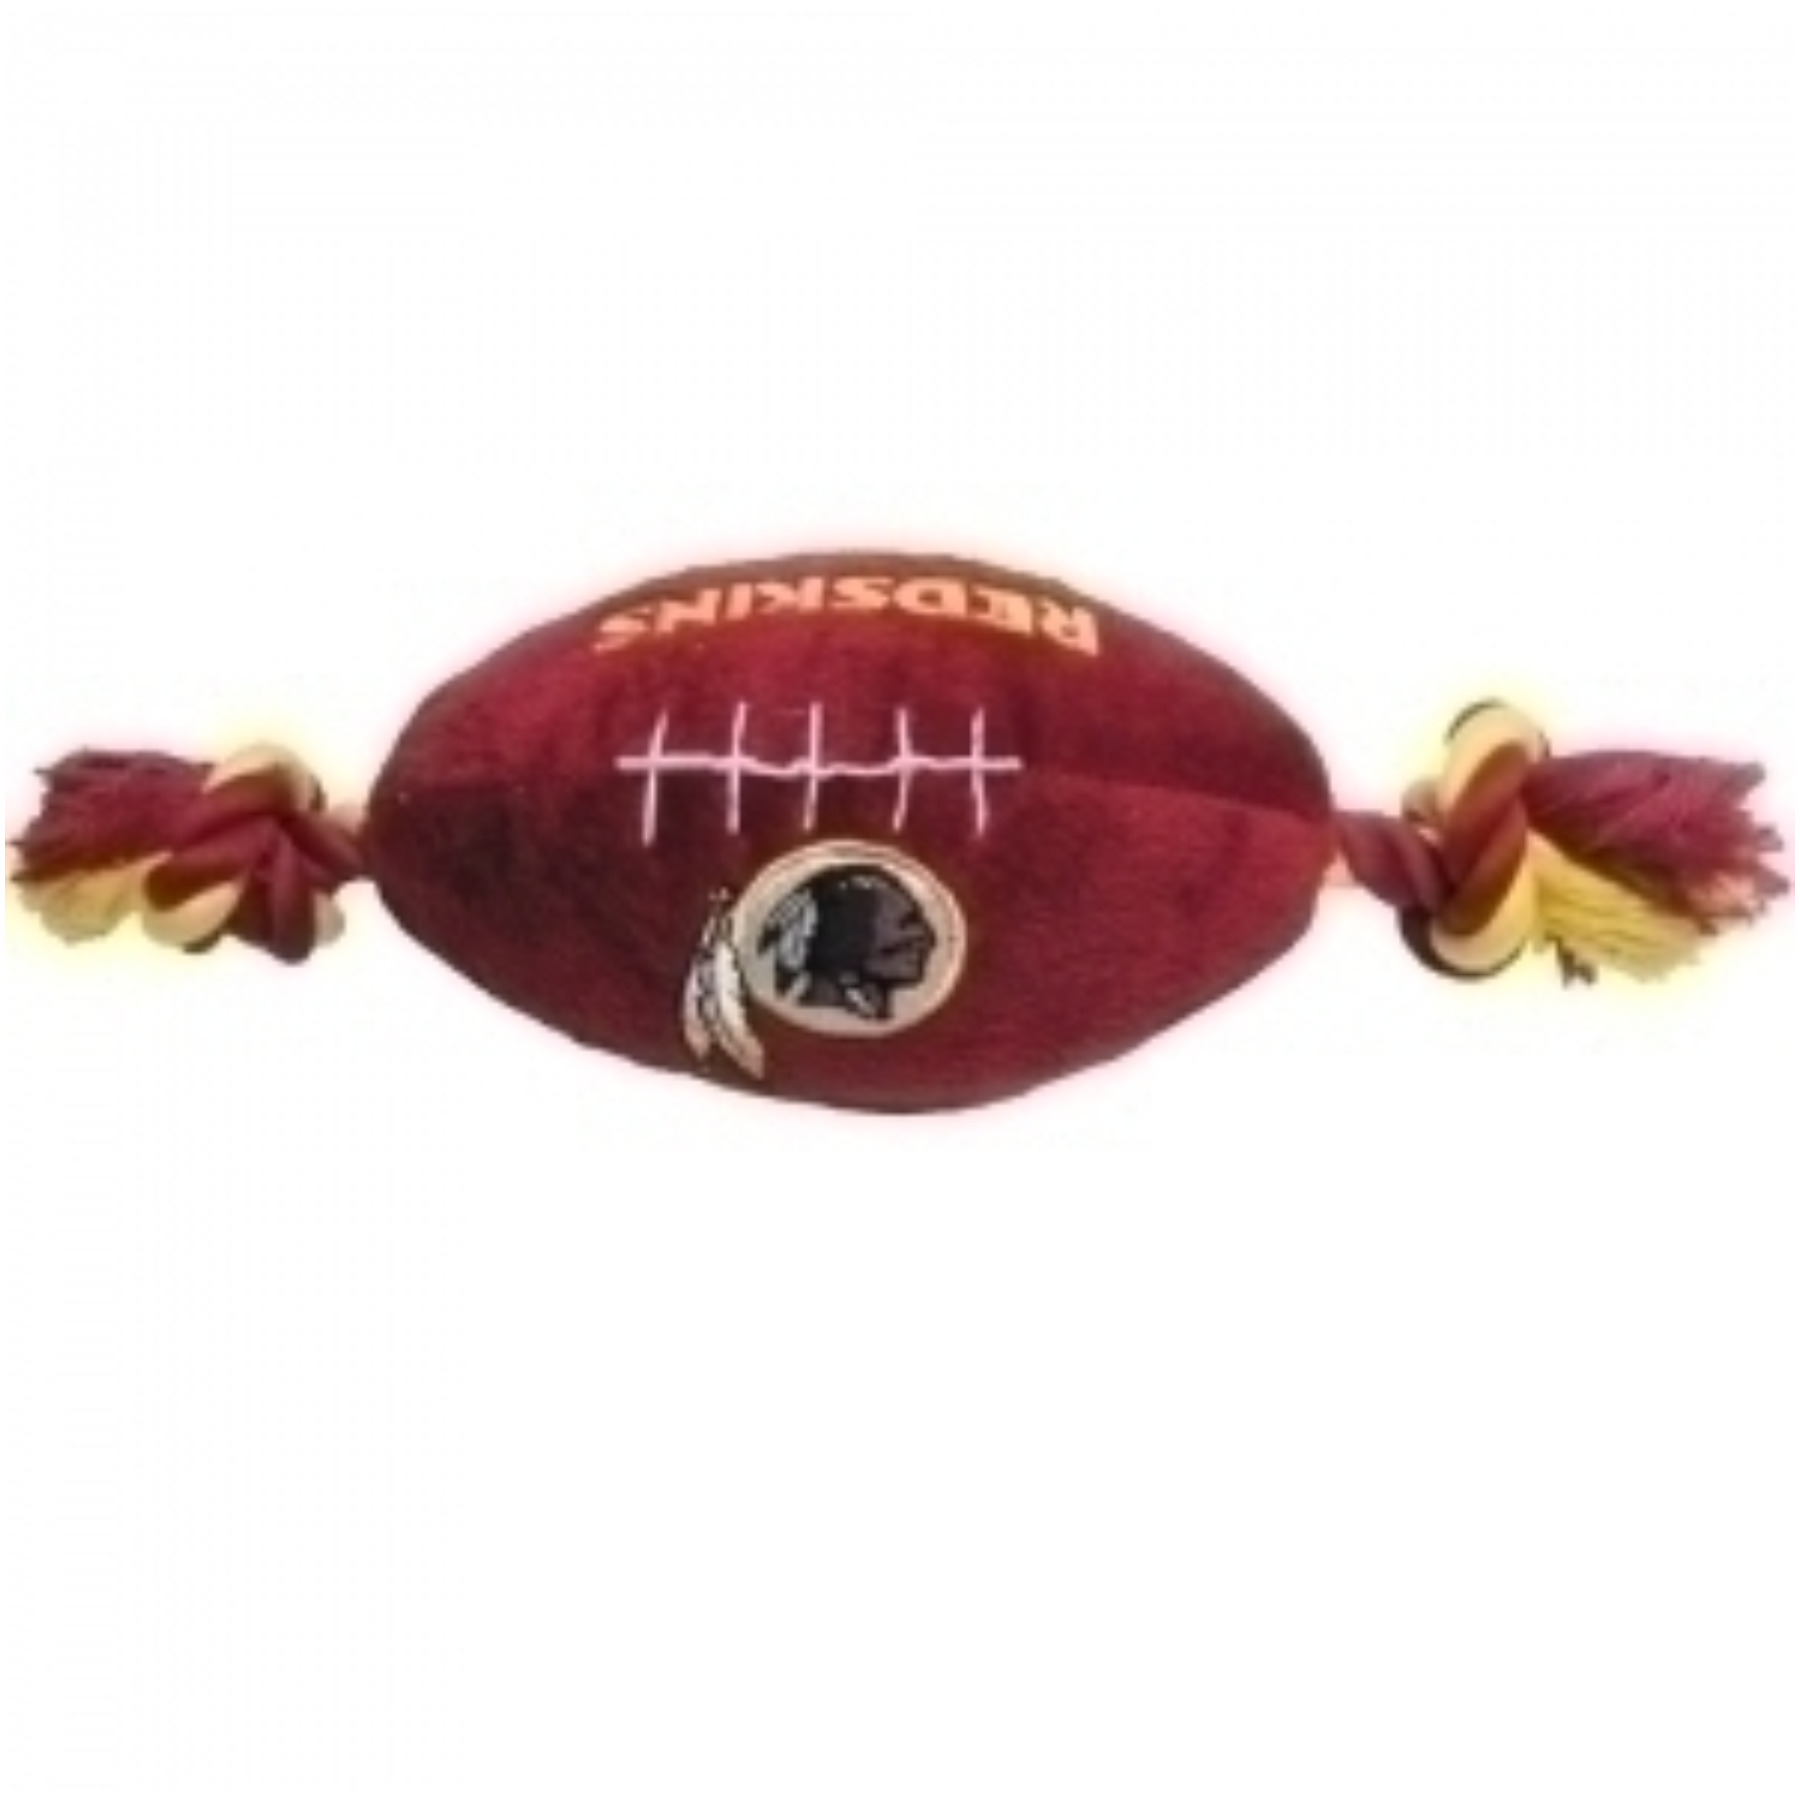 Washington Redskins Plush Dog Toy